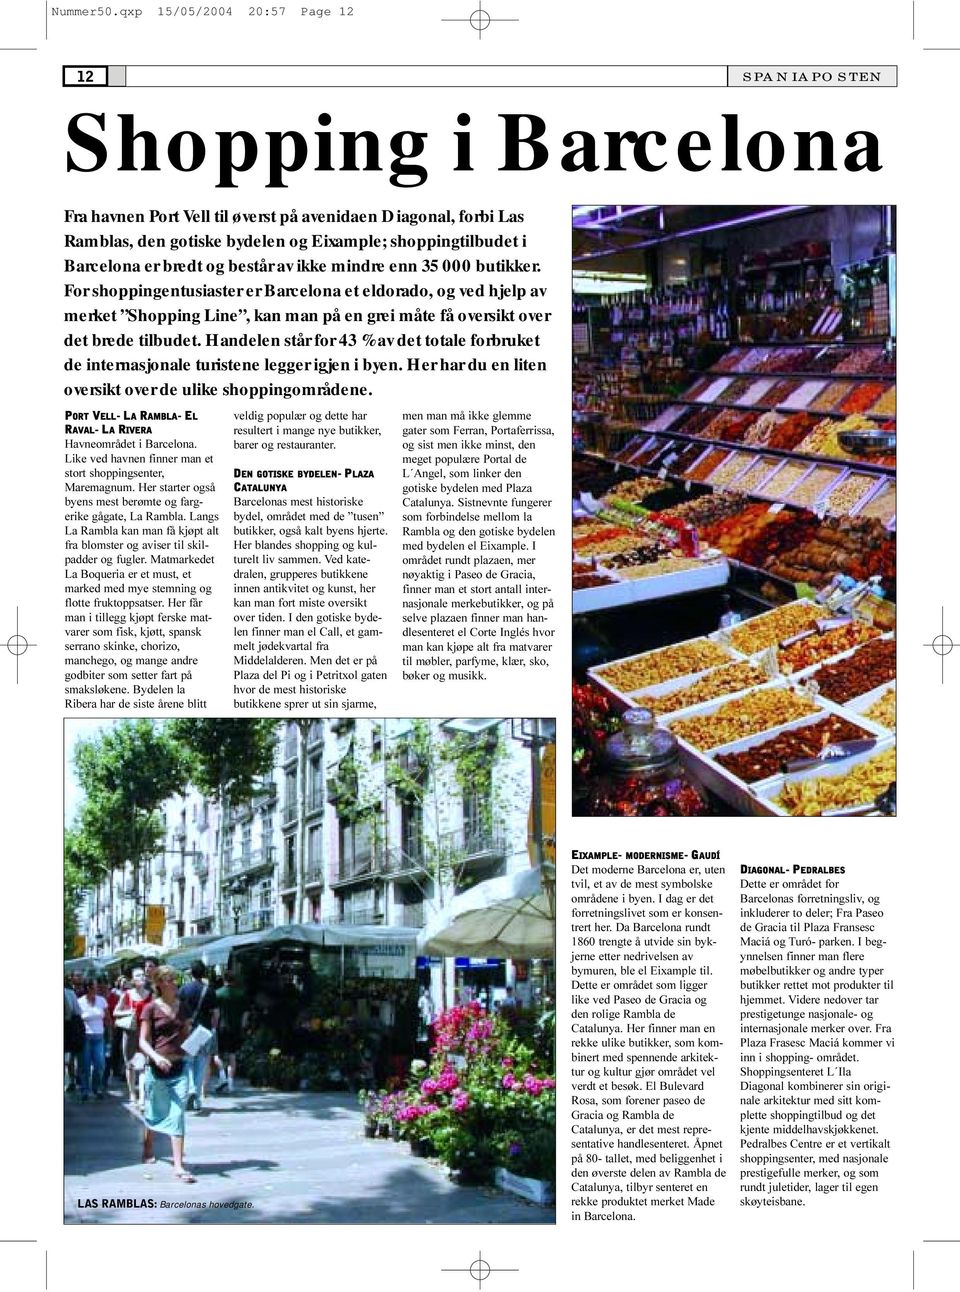 og består av ikke mindre enn 35 000 butikker. For shoppingentusiaster er Barcelona et eldorado, og ved hjelp av merket Shopping Line, kan man på en grei måte få oversikt over det brede tilbudet.